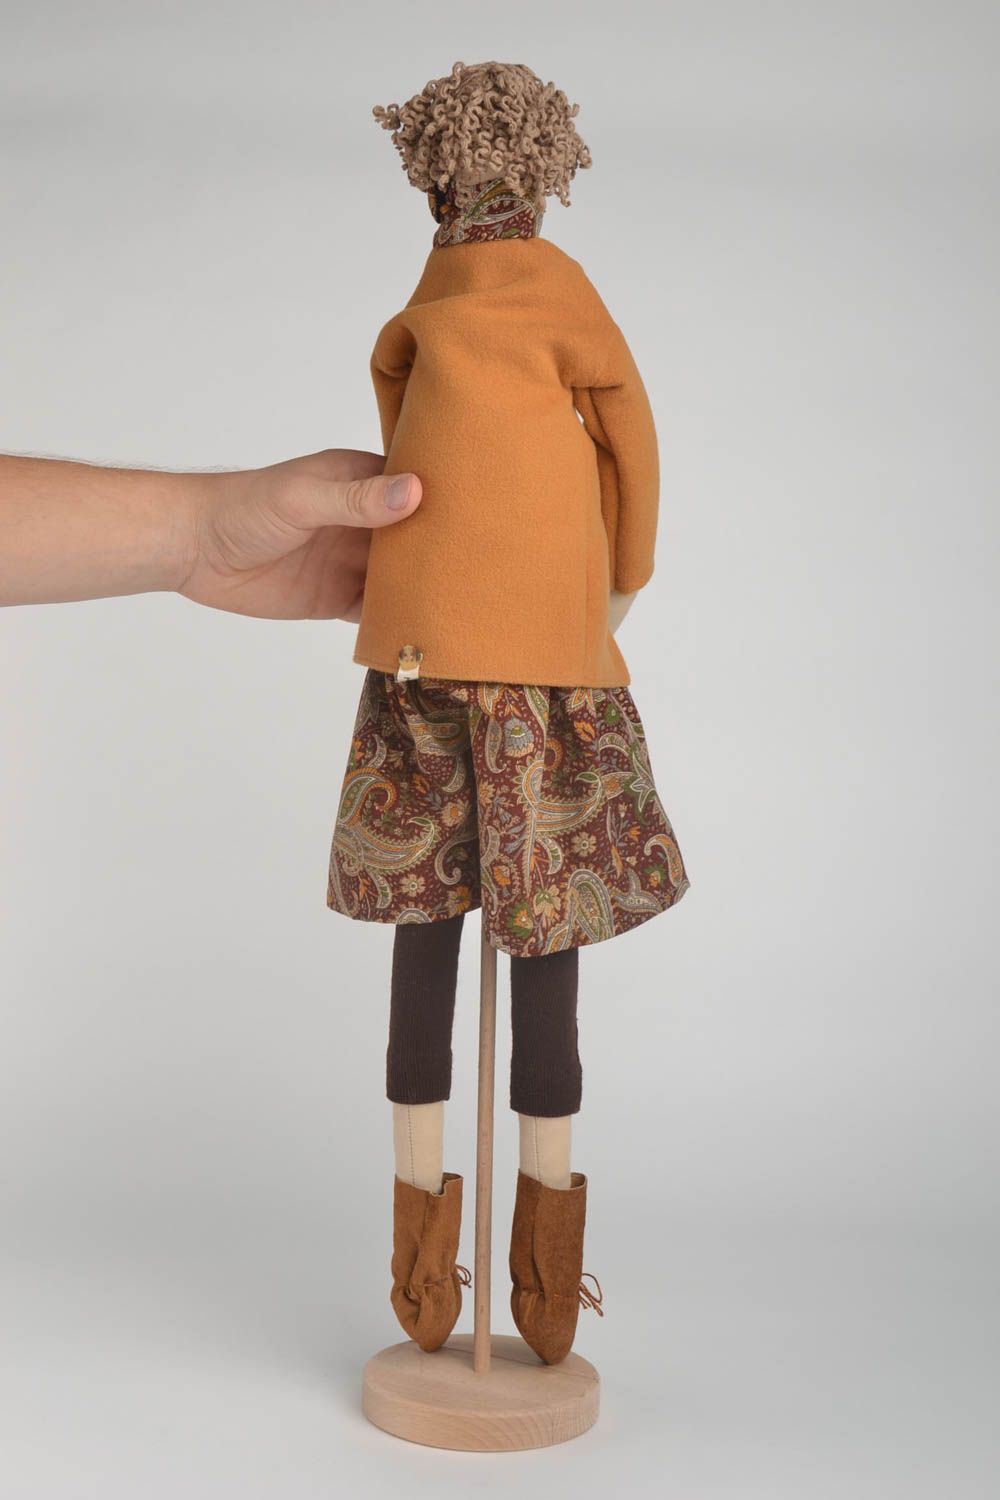 Handmade Stoff Puppe Haus Dekoration Geschenk für Frau mit Ständer in Braun foto 5